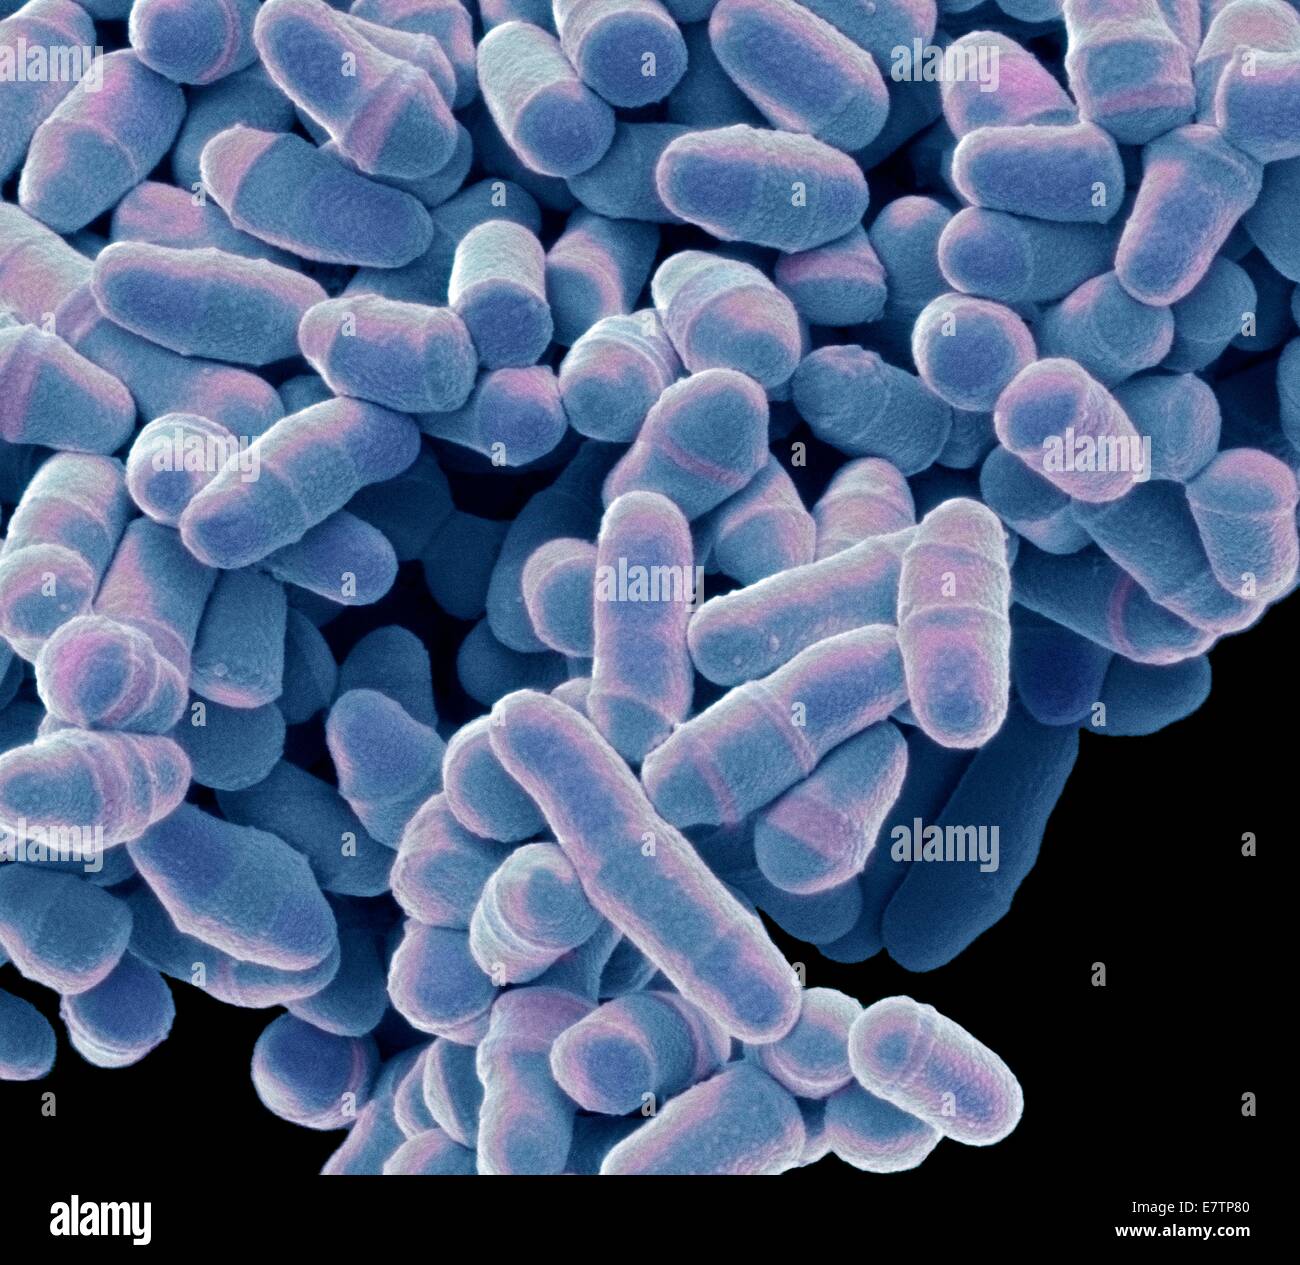 Color análisis micrografía de electrones (SEM) de la levadura Schizosaccharomyces pombe. S. pombe es un hongo unicelular que es ampliamente estudiado como un organismo modelo para la división de las células eucariotas. Es una forma de vara la levadura que crece por la elongación en sus extremos. R Foto de stock